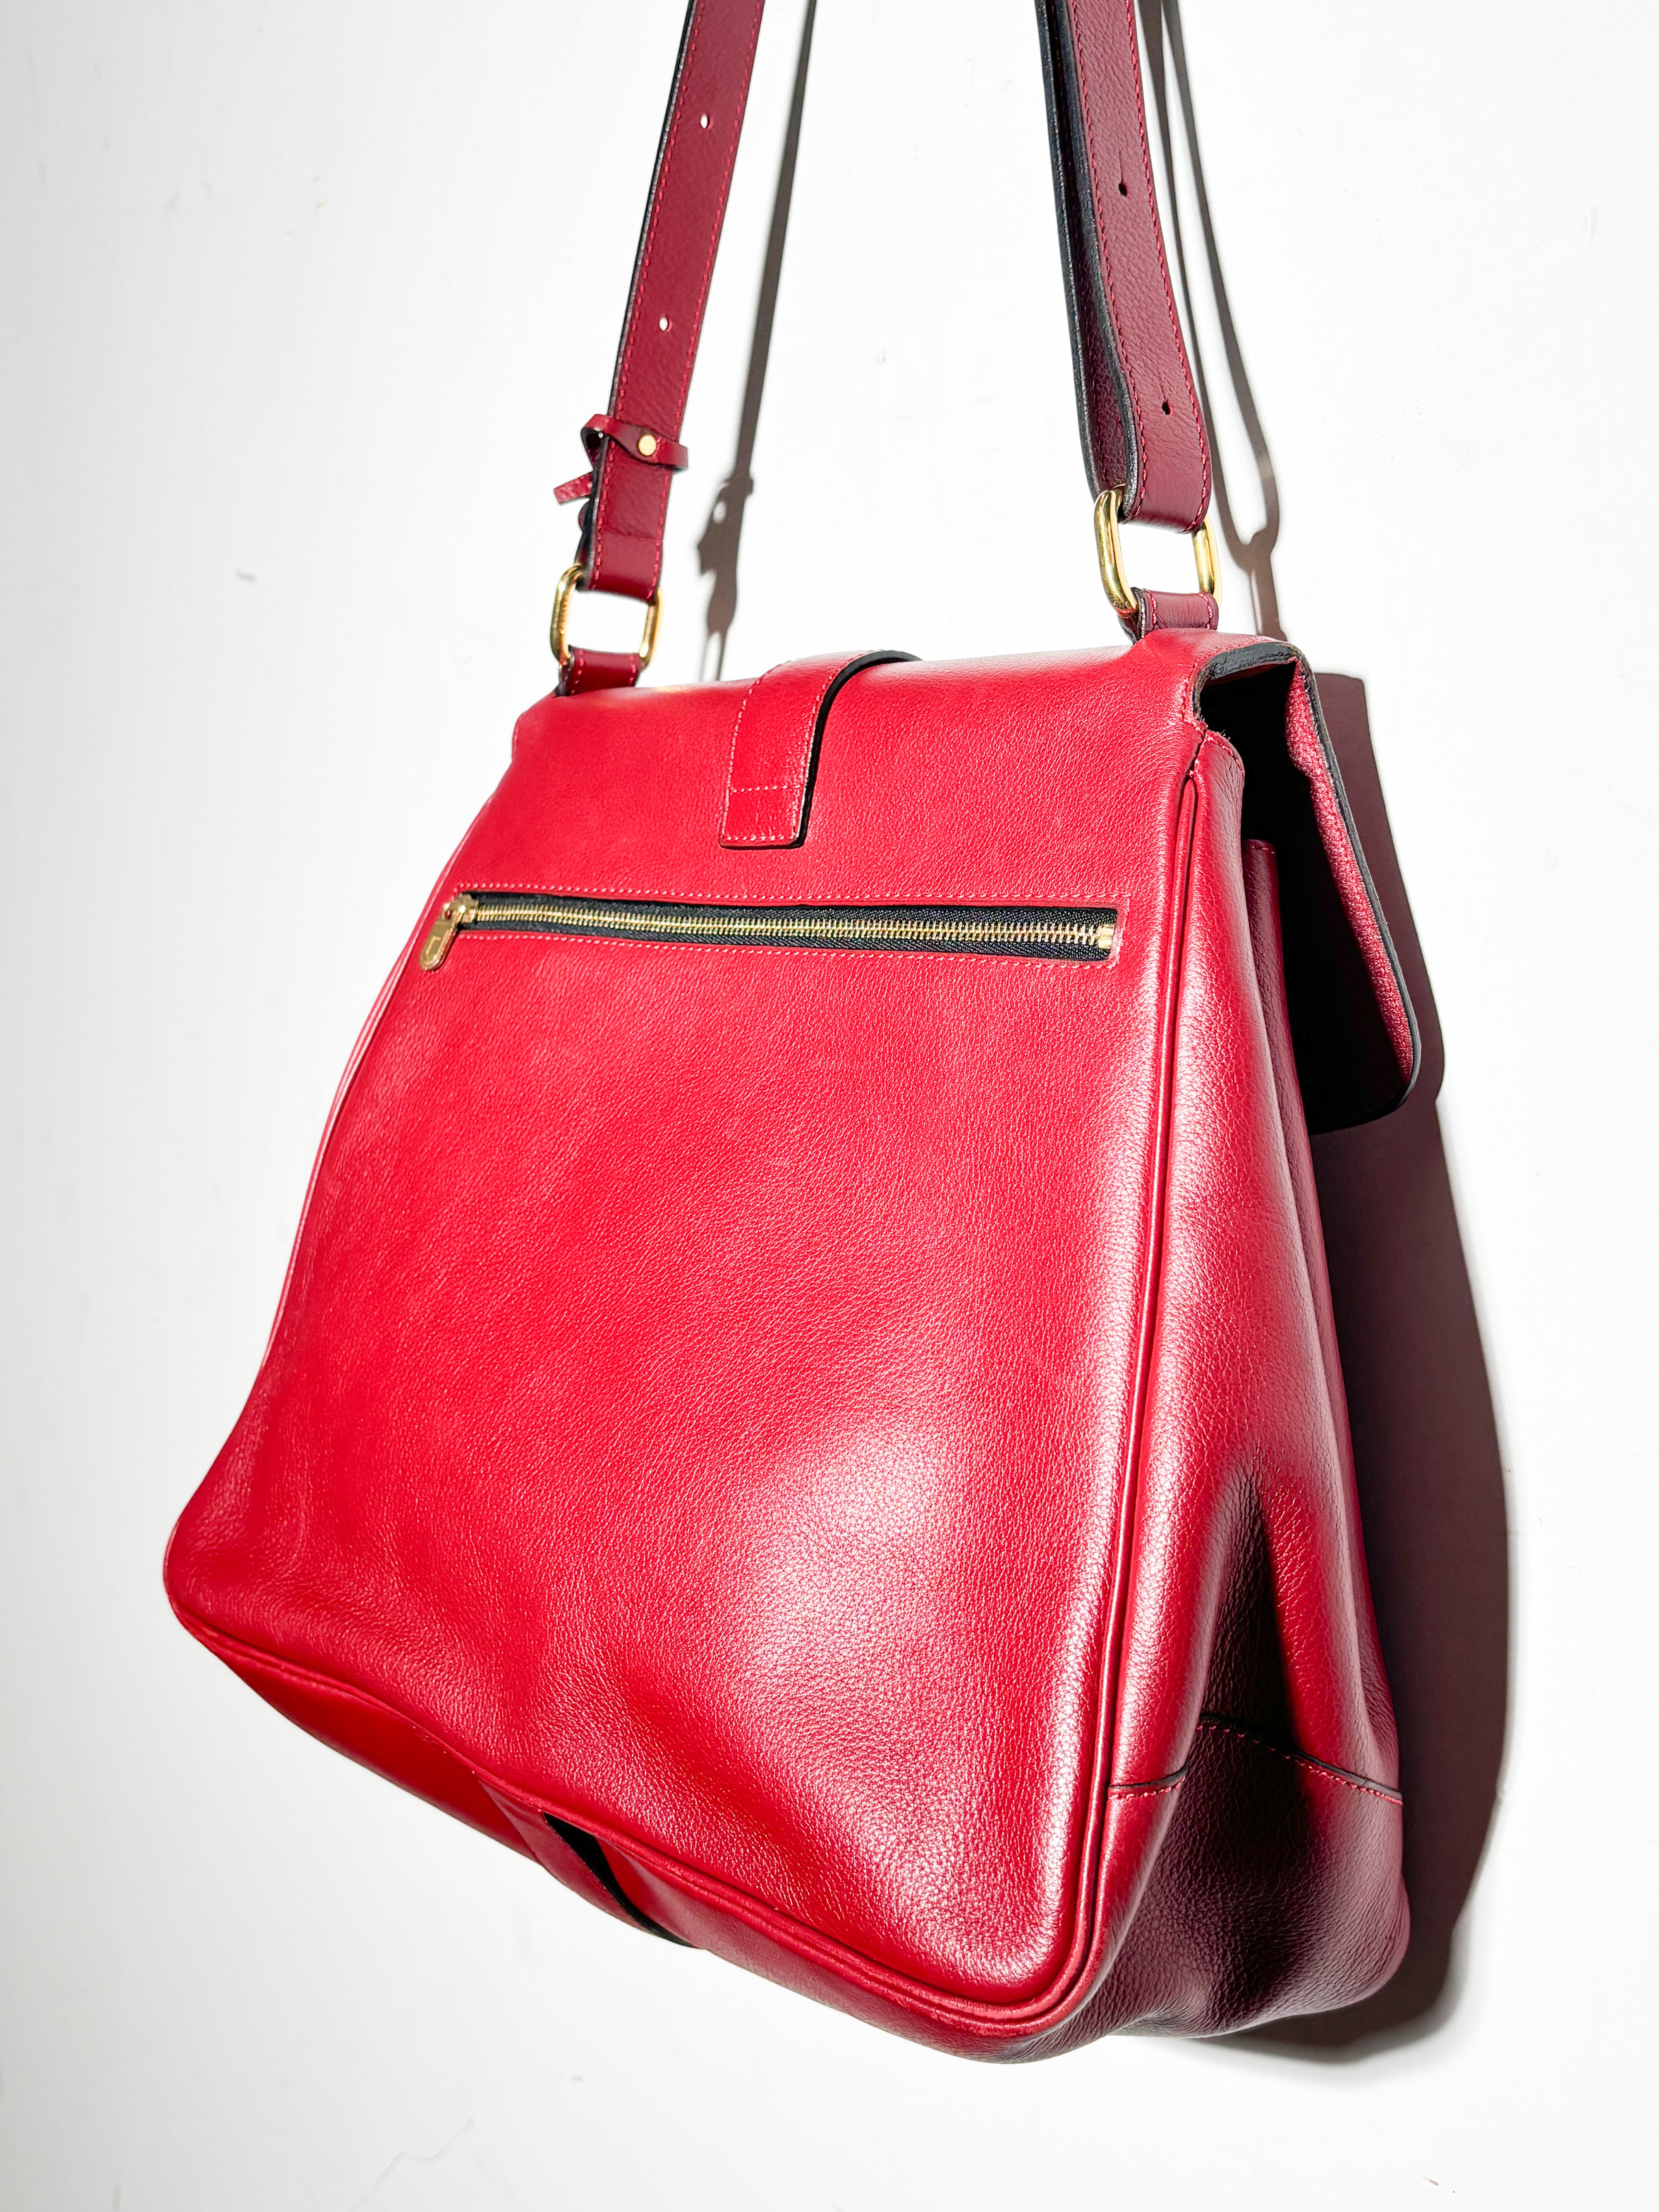 Delvaux red leather shoulder Bag